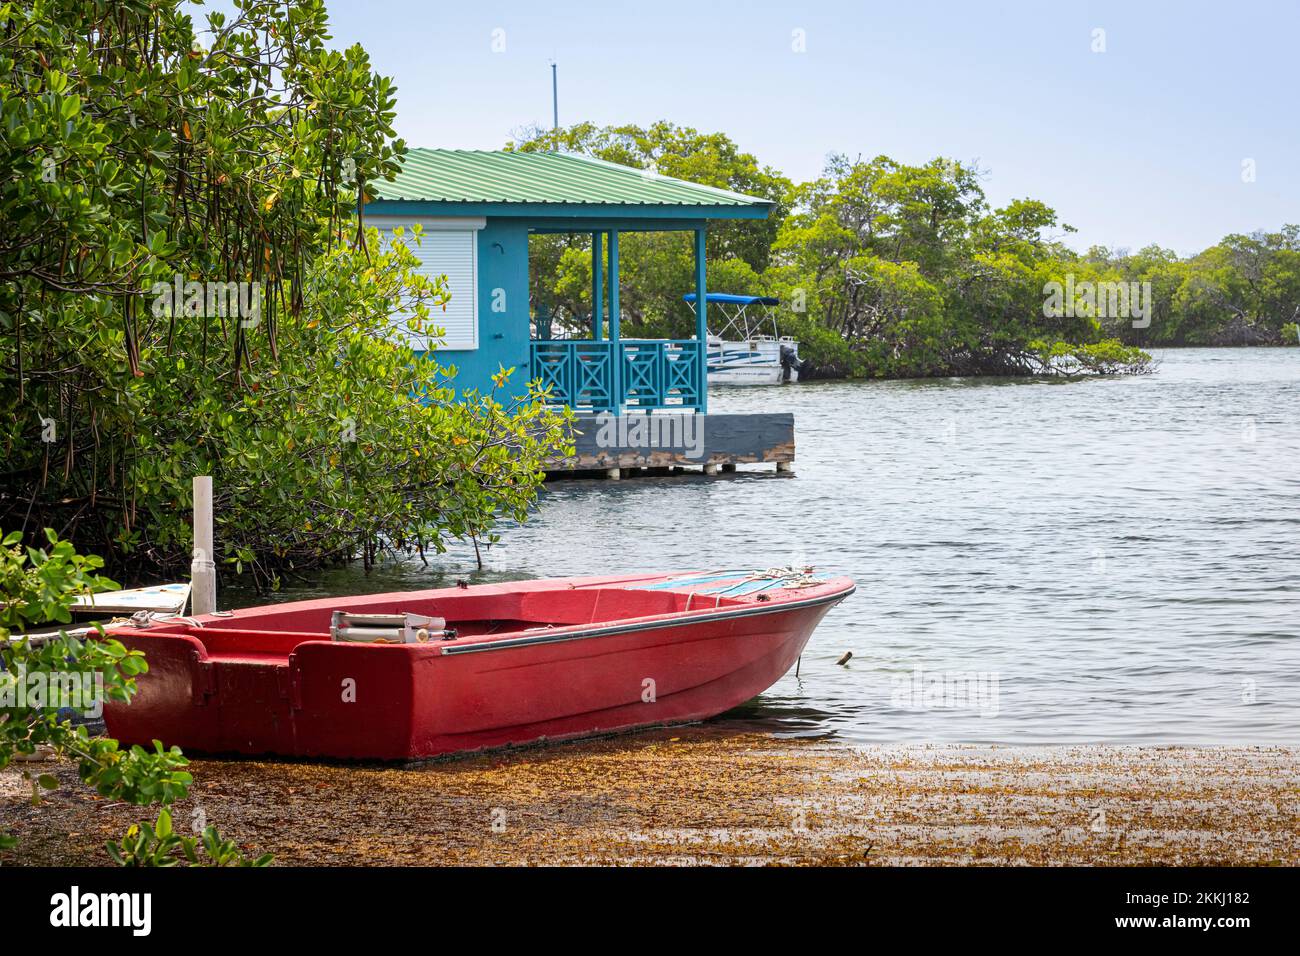 Un bateau rouge et une tour de bateau bleue à la Parguera, sur l'île tropicale des Caraïbes de Puerto Rico, Etats-Unis. Banque D'Images